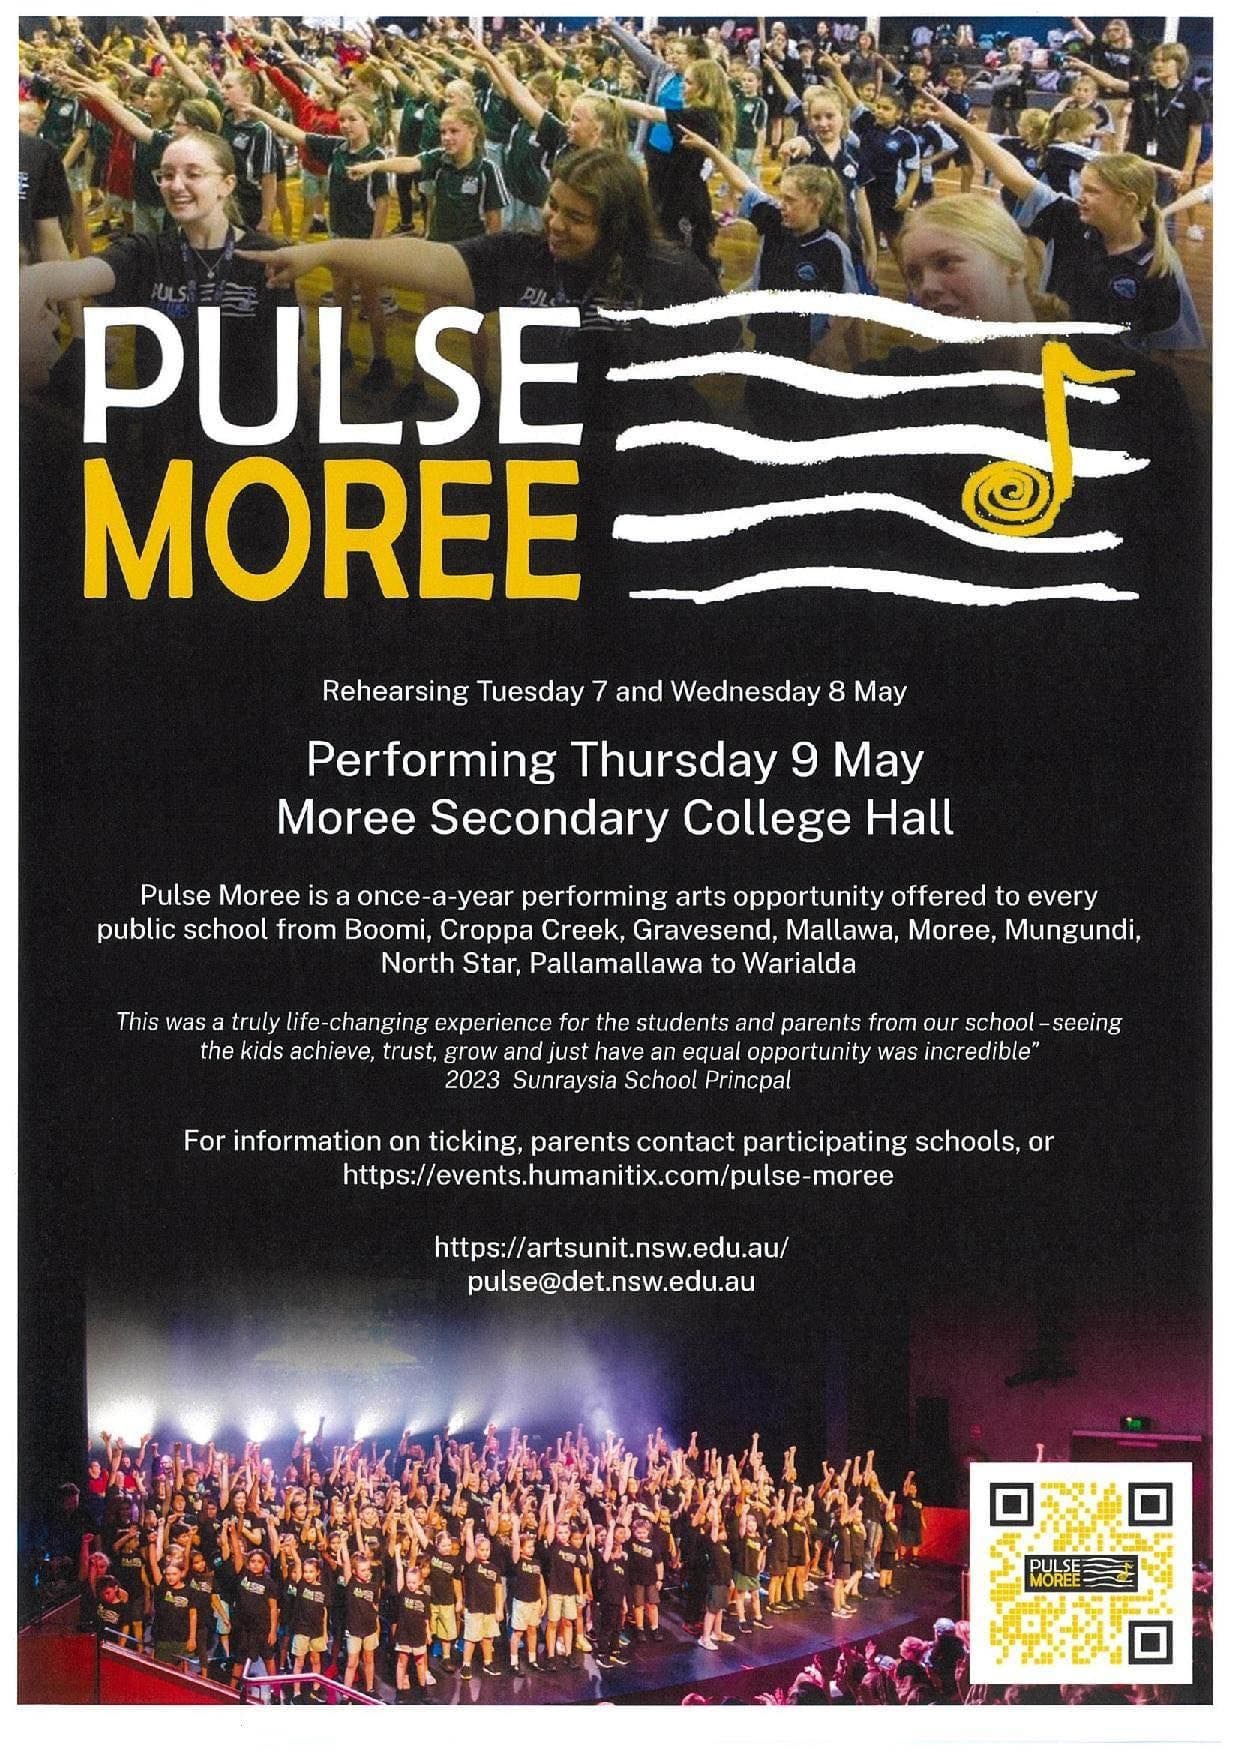 Pulse Moree - Performing Arts